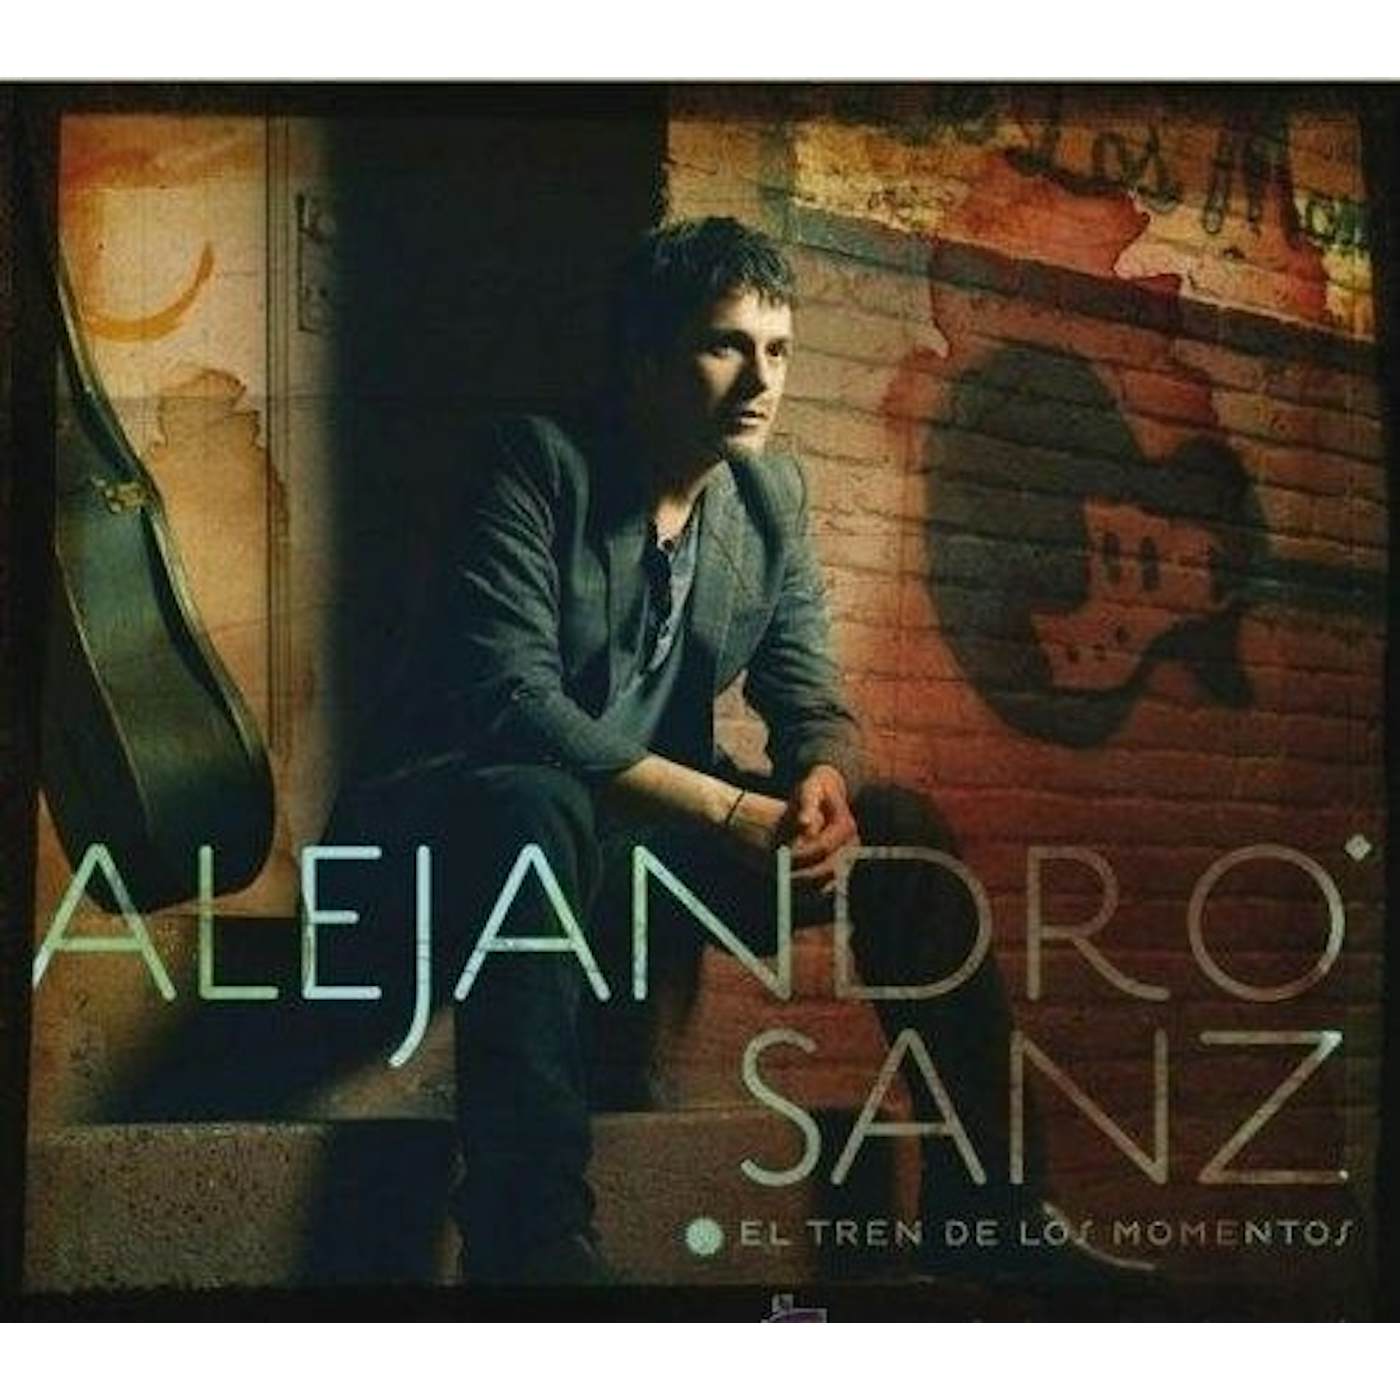 Alejandro Sanz El tren de los momentos Vinyl Record